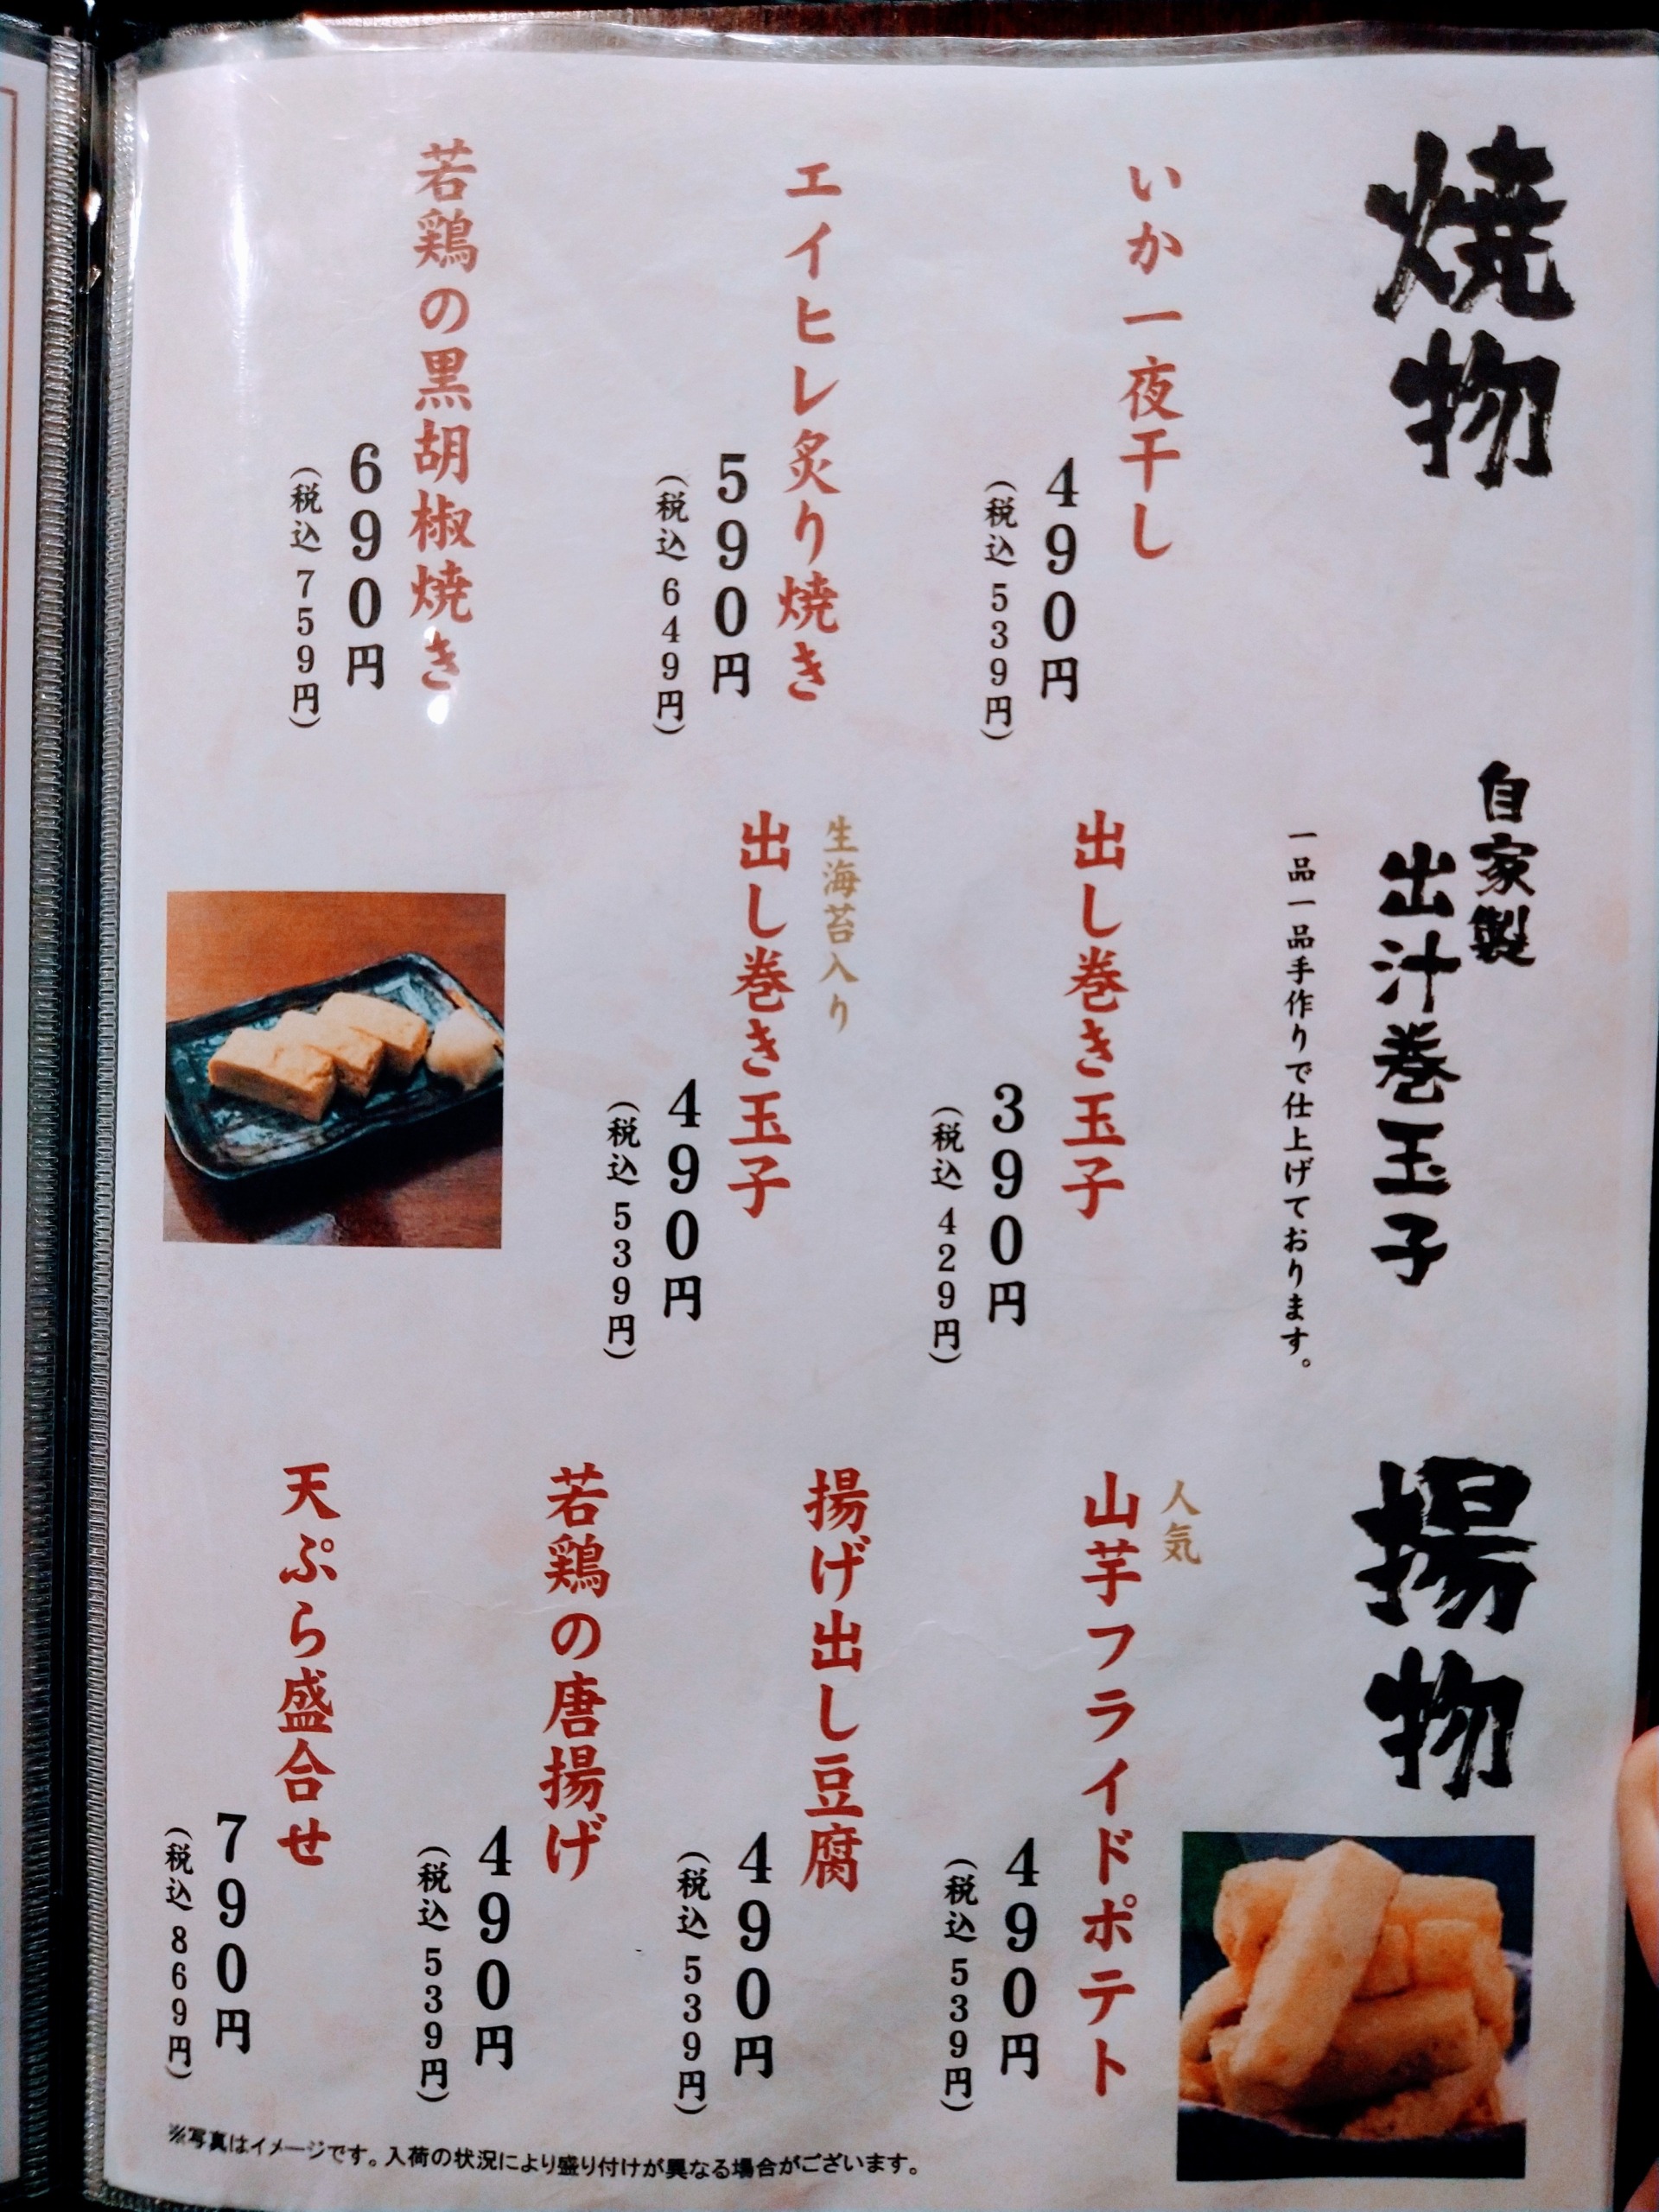 sakanano-manma-chofu-menu09